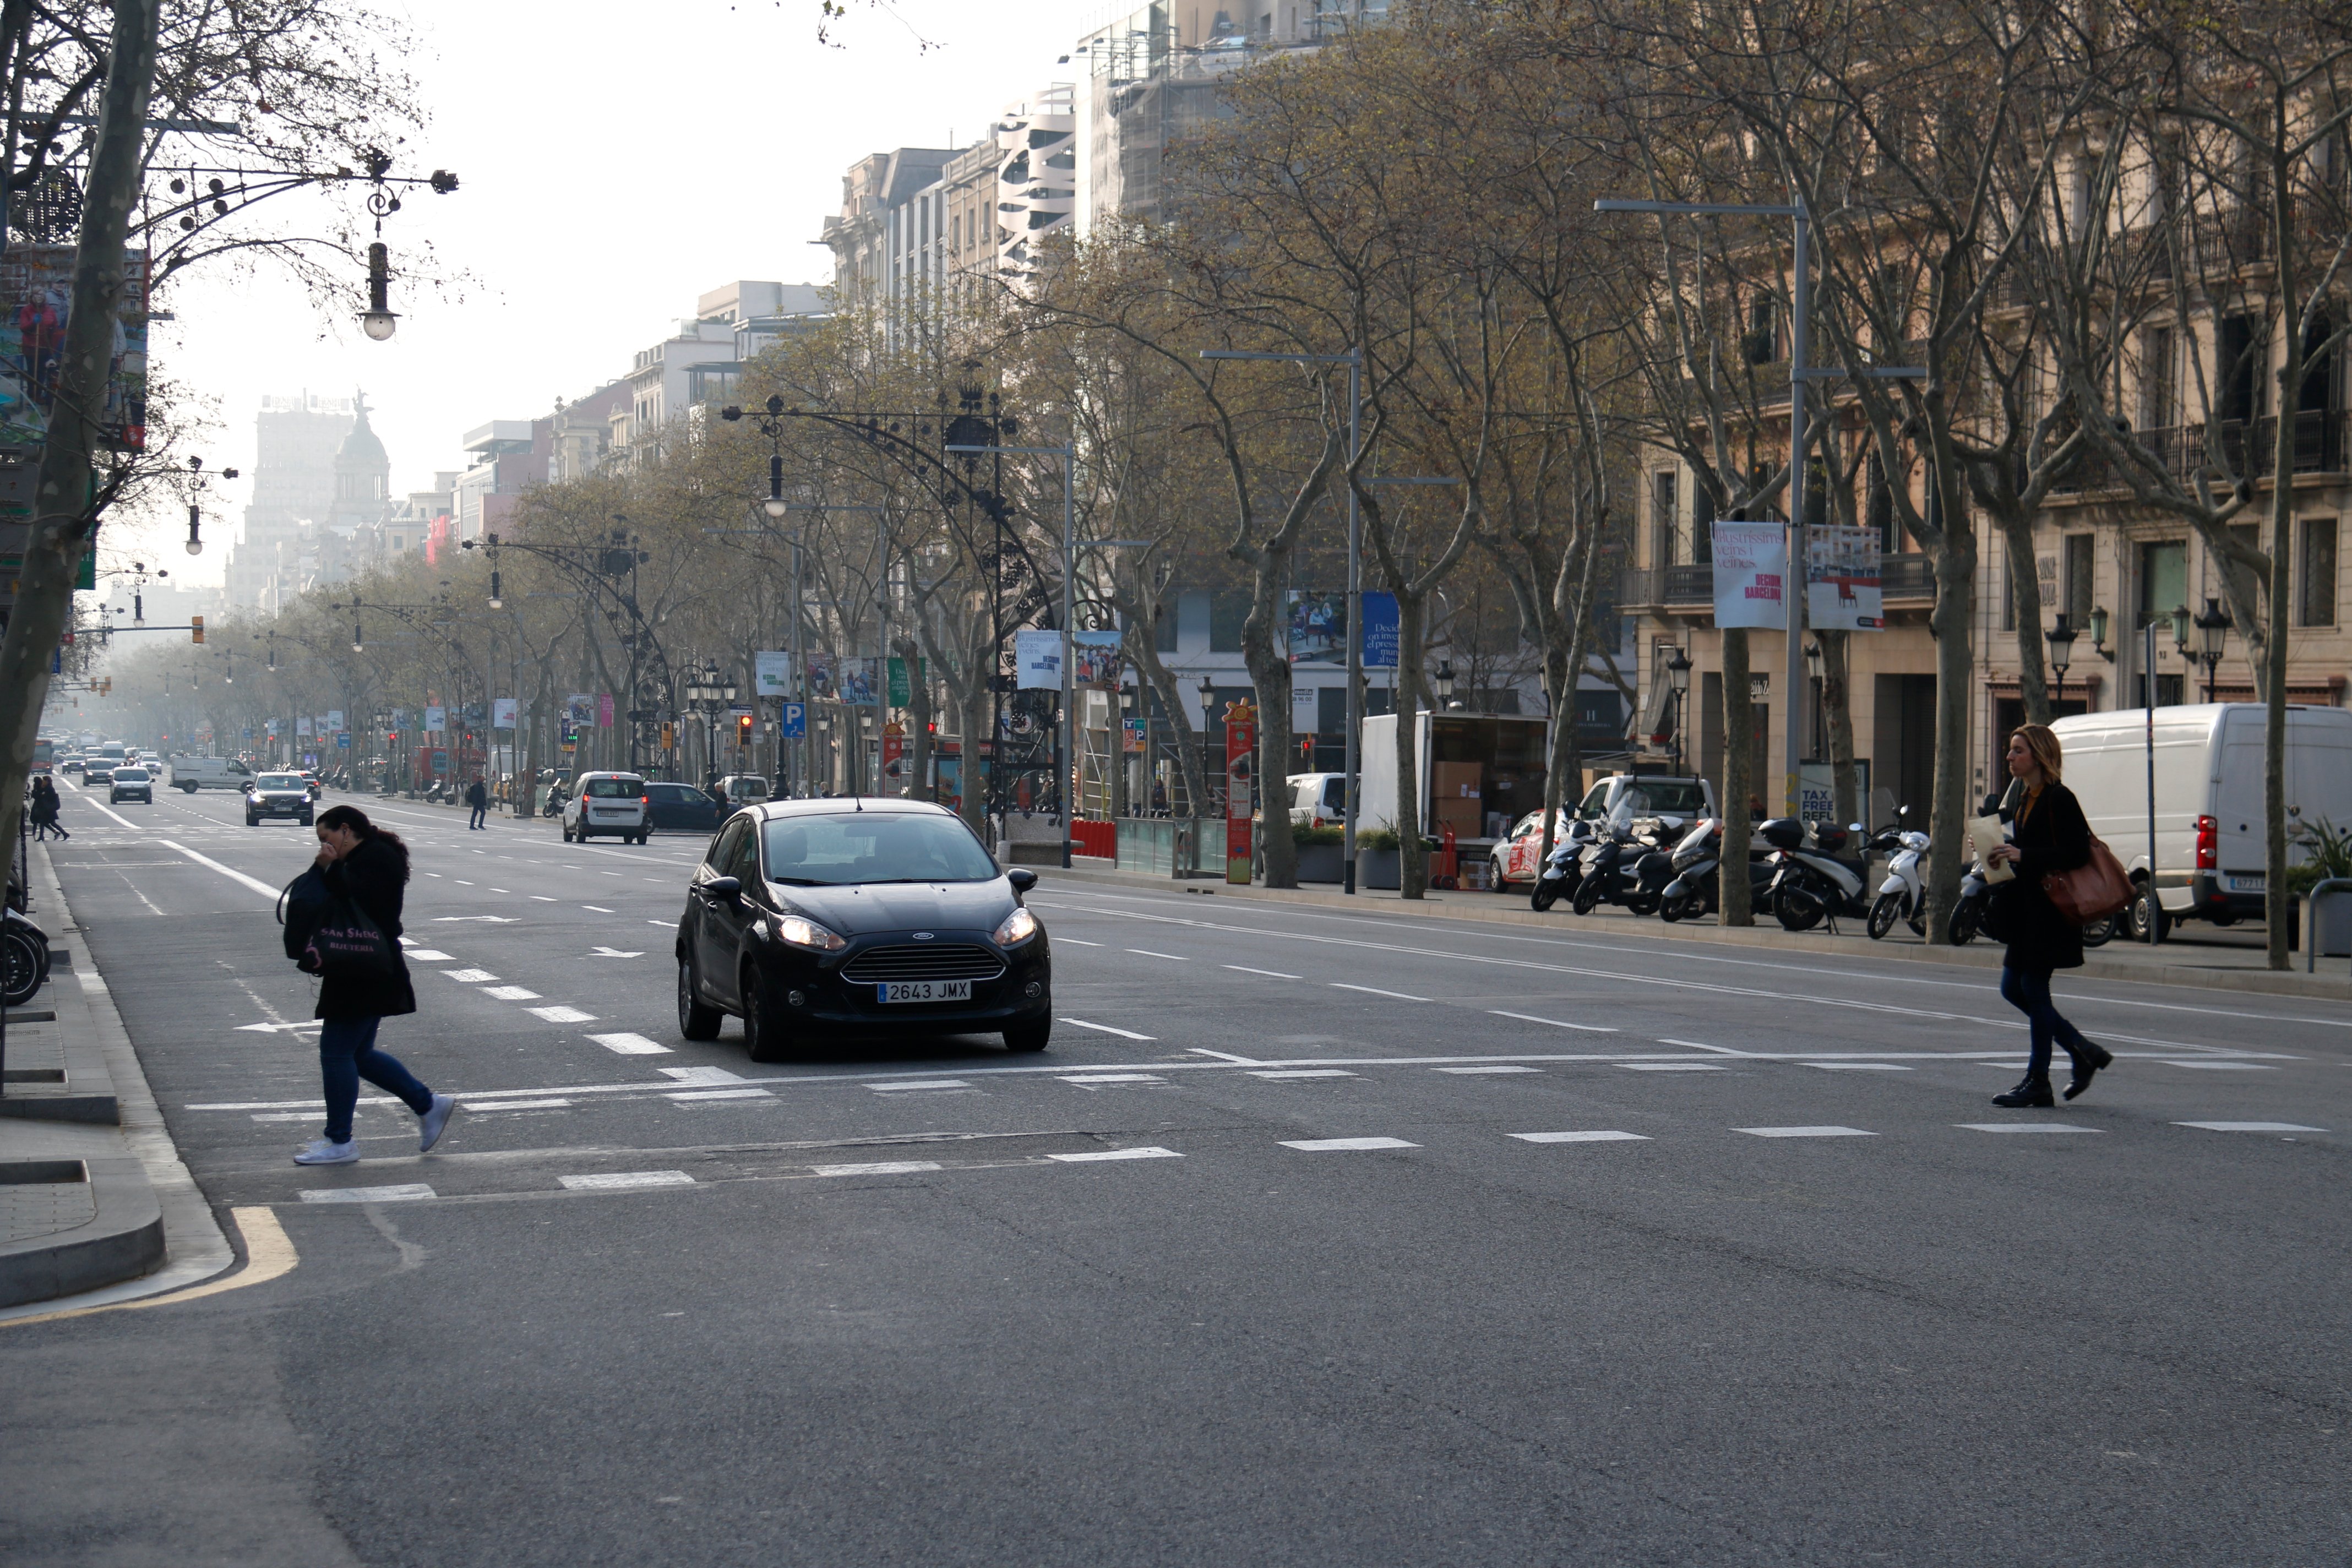 La propuesta radical de dos entidades: eliminar el coche privado de Barcelona